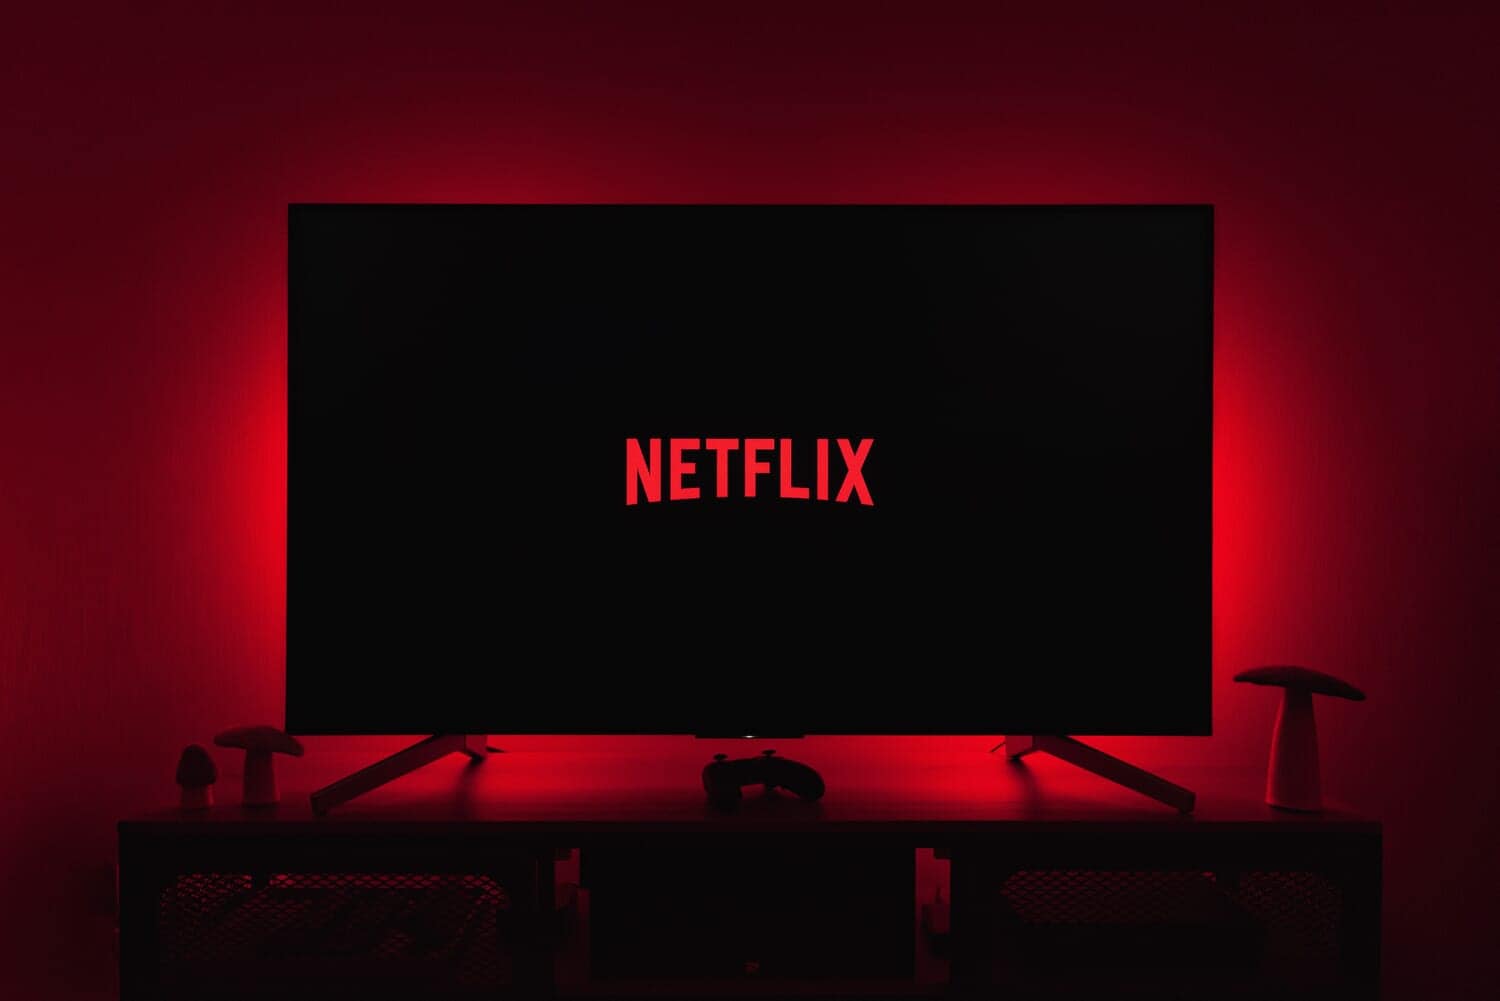 Netflixが初の会員数減を報告 – パスワード共有の厳格化など今後の方針を説明